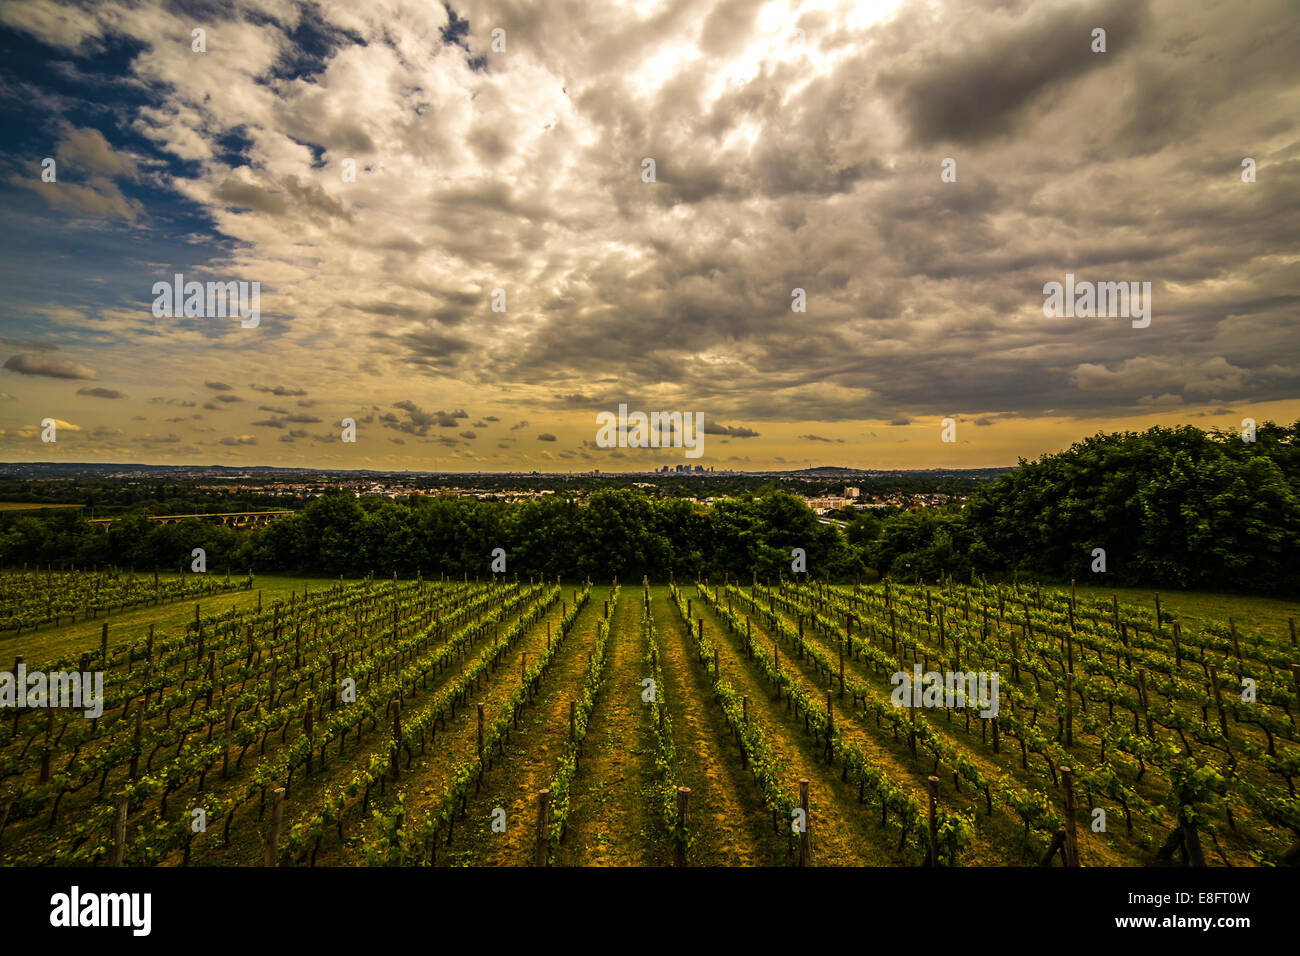 Francia, Paris La Defense detrás viñas Foto de stock